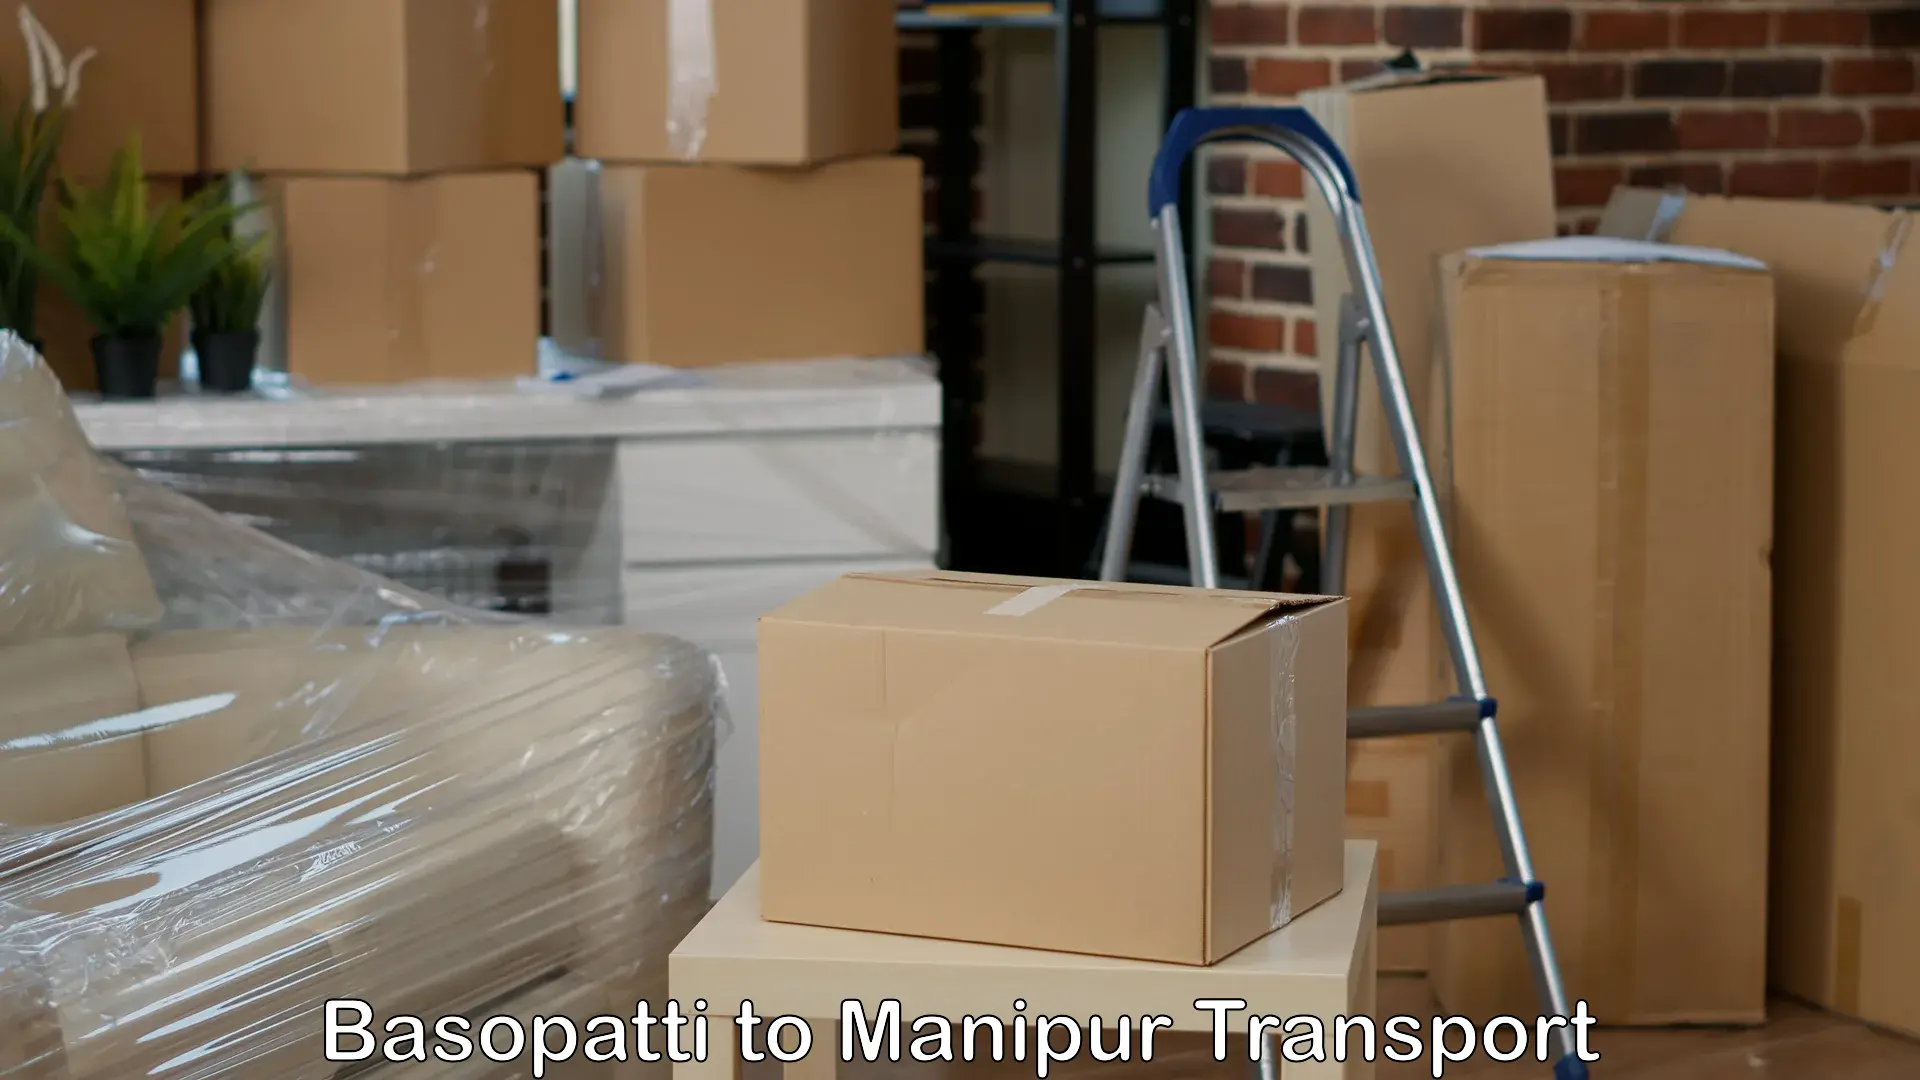 Truck transport companies in India Basopatti to Senapati